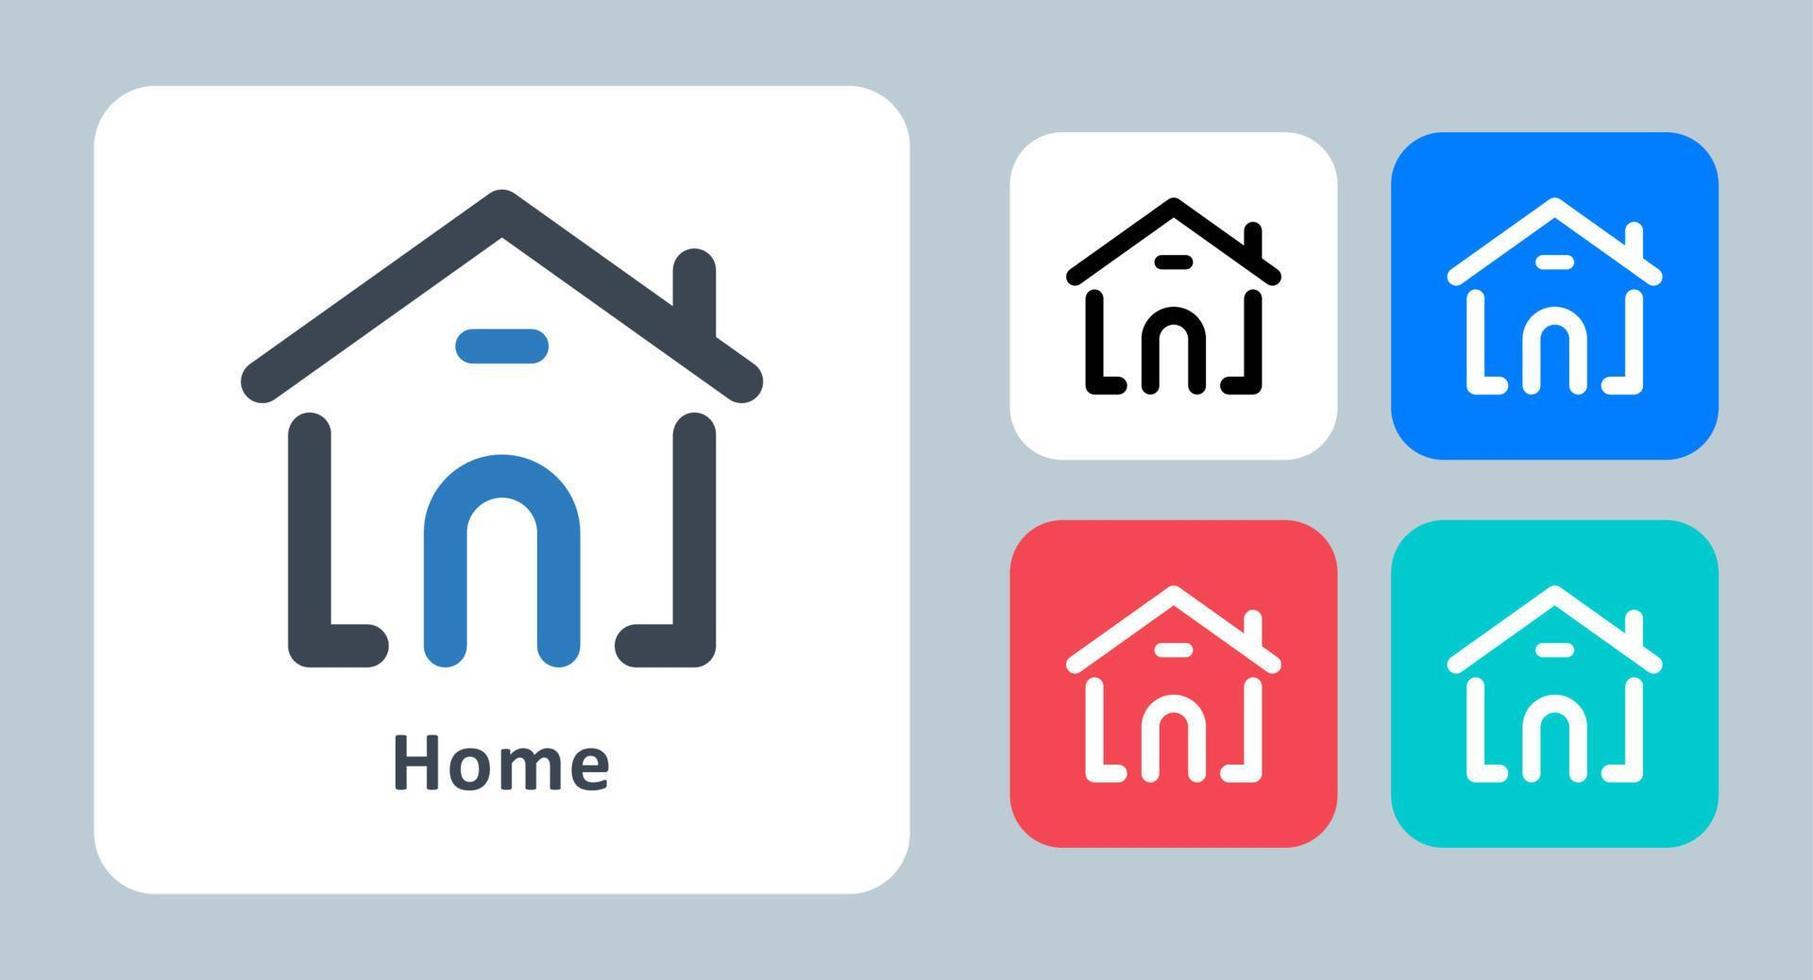 Home-Symbol - Vektor-Illustration. zuhause, haus, gebäude, eigentum, wohnung, immobilien, architektur, konstruktion, linie, umriss, flach, symbole . vektor